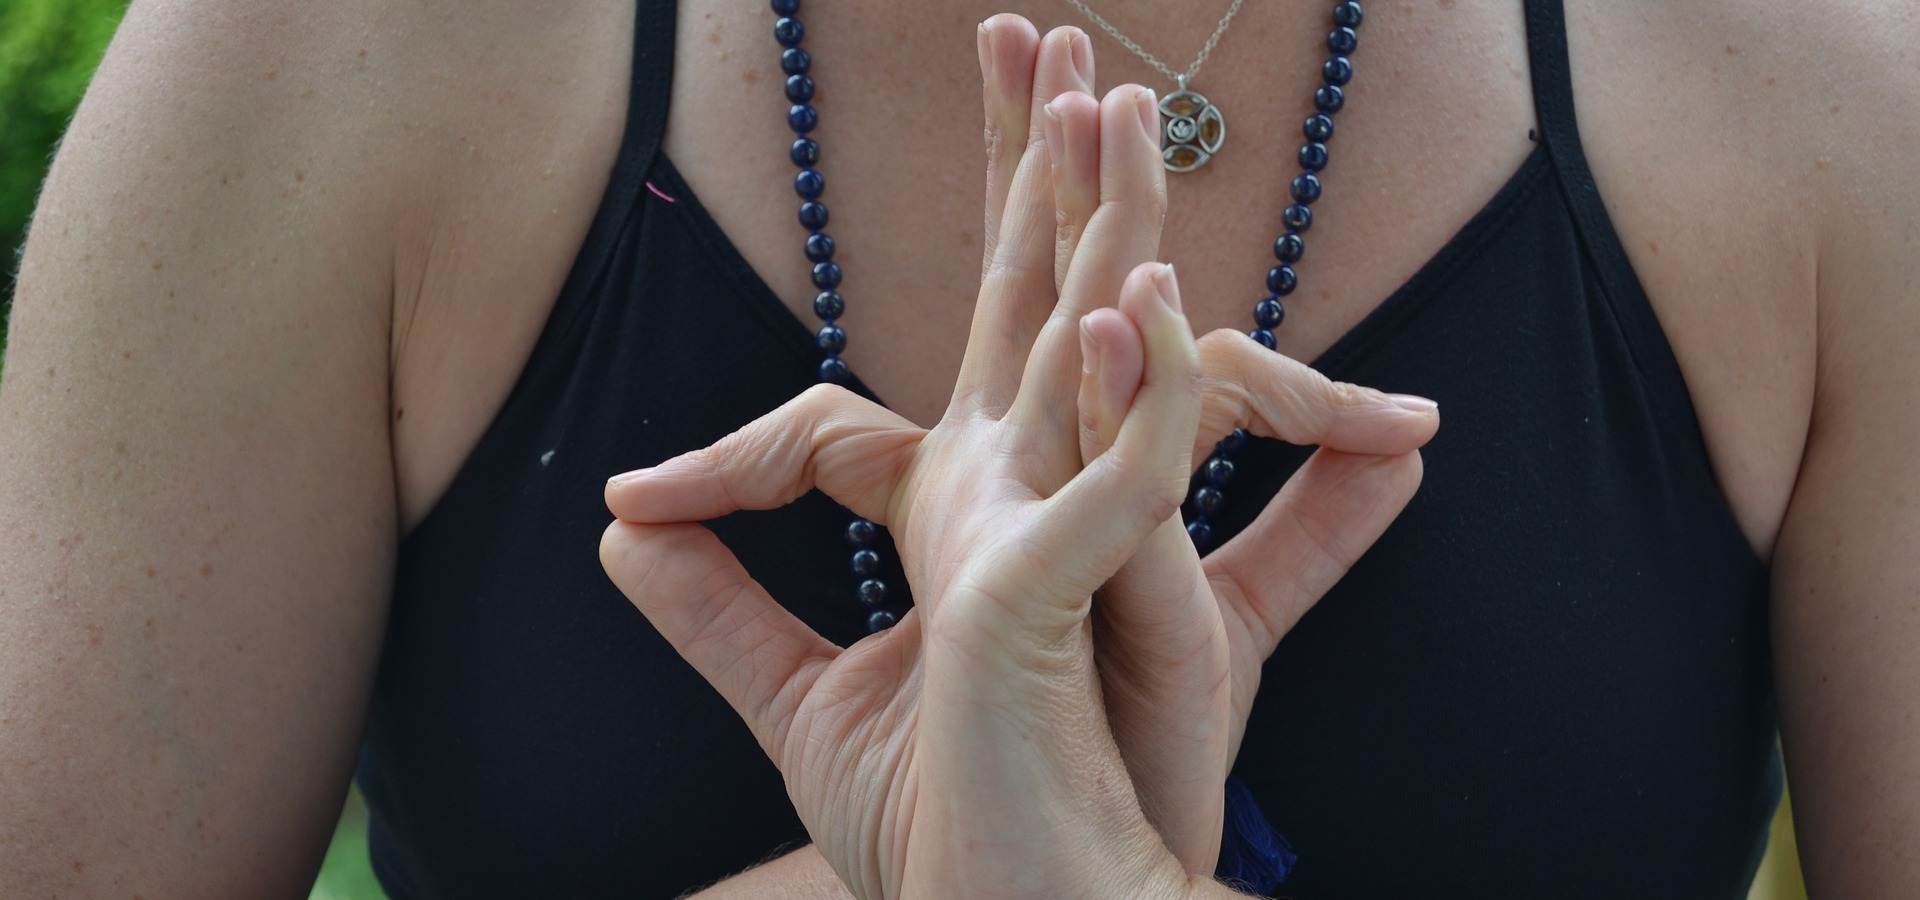 Descubra a importância das suas mãos com o yoga mudra